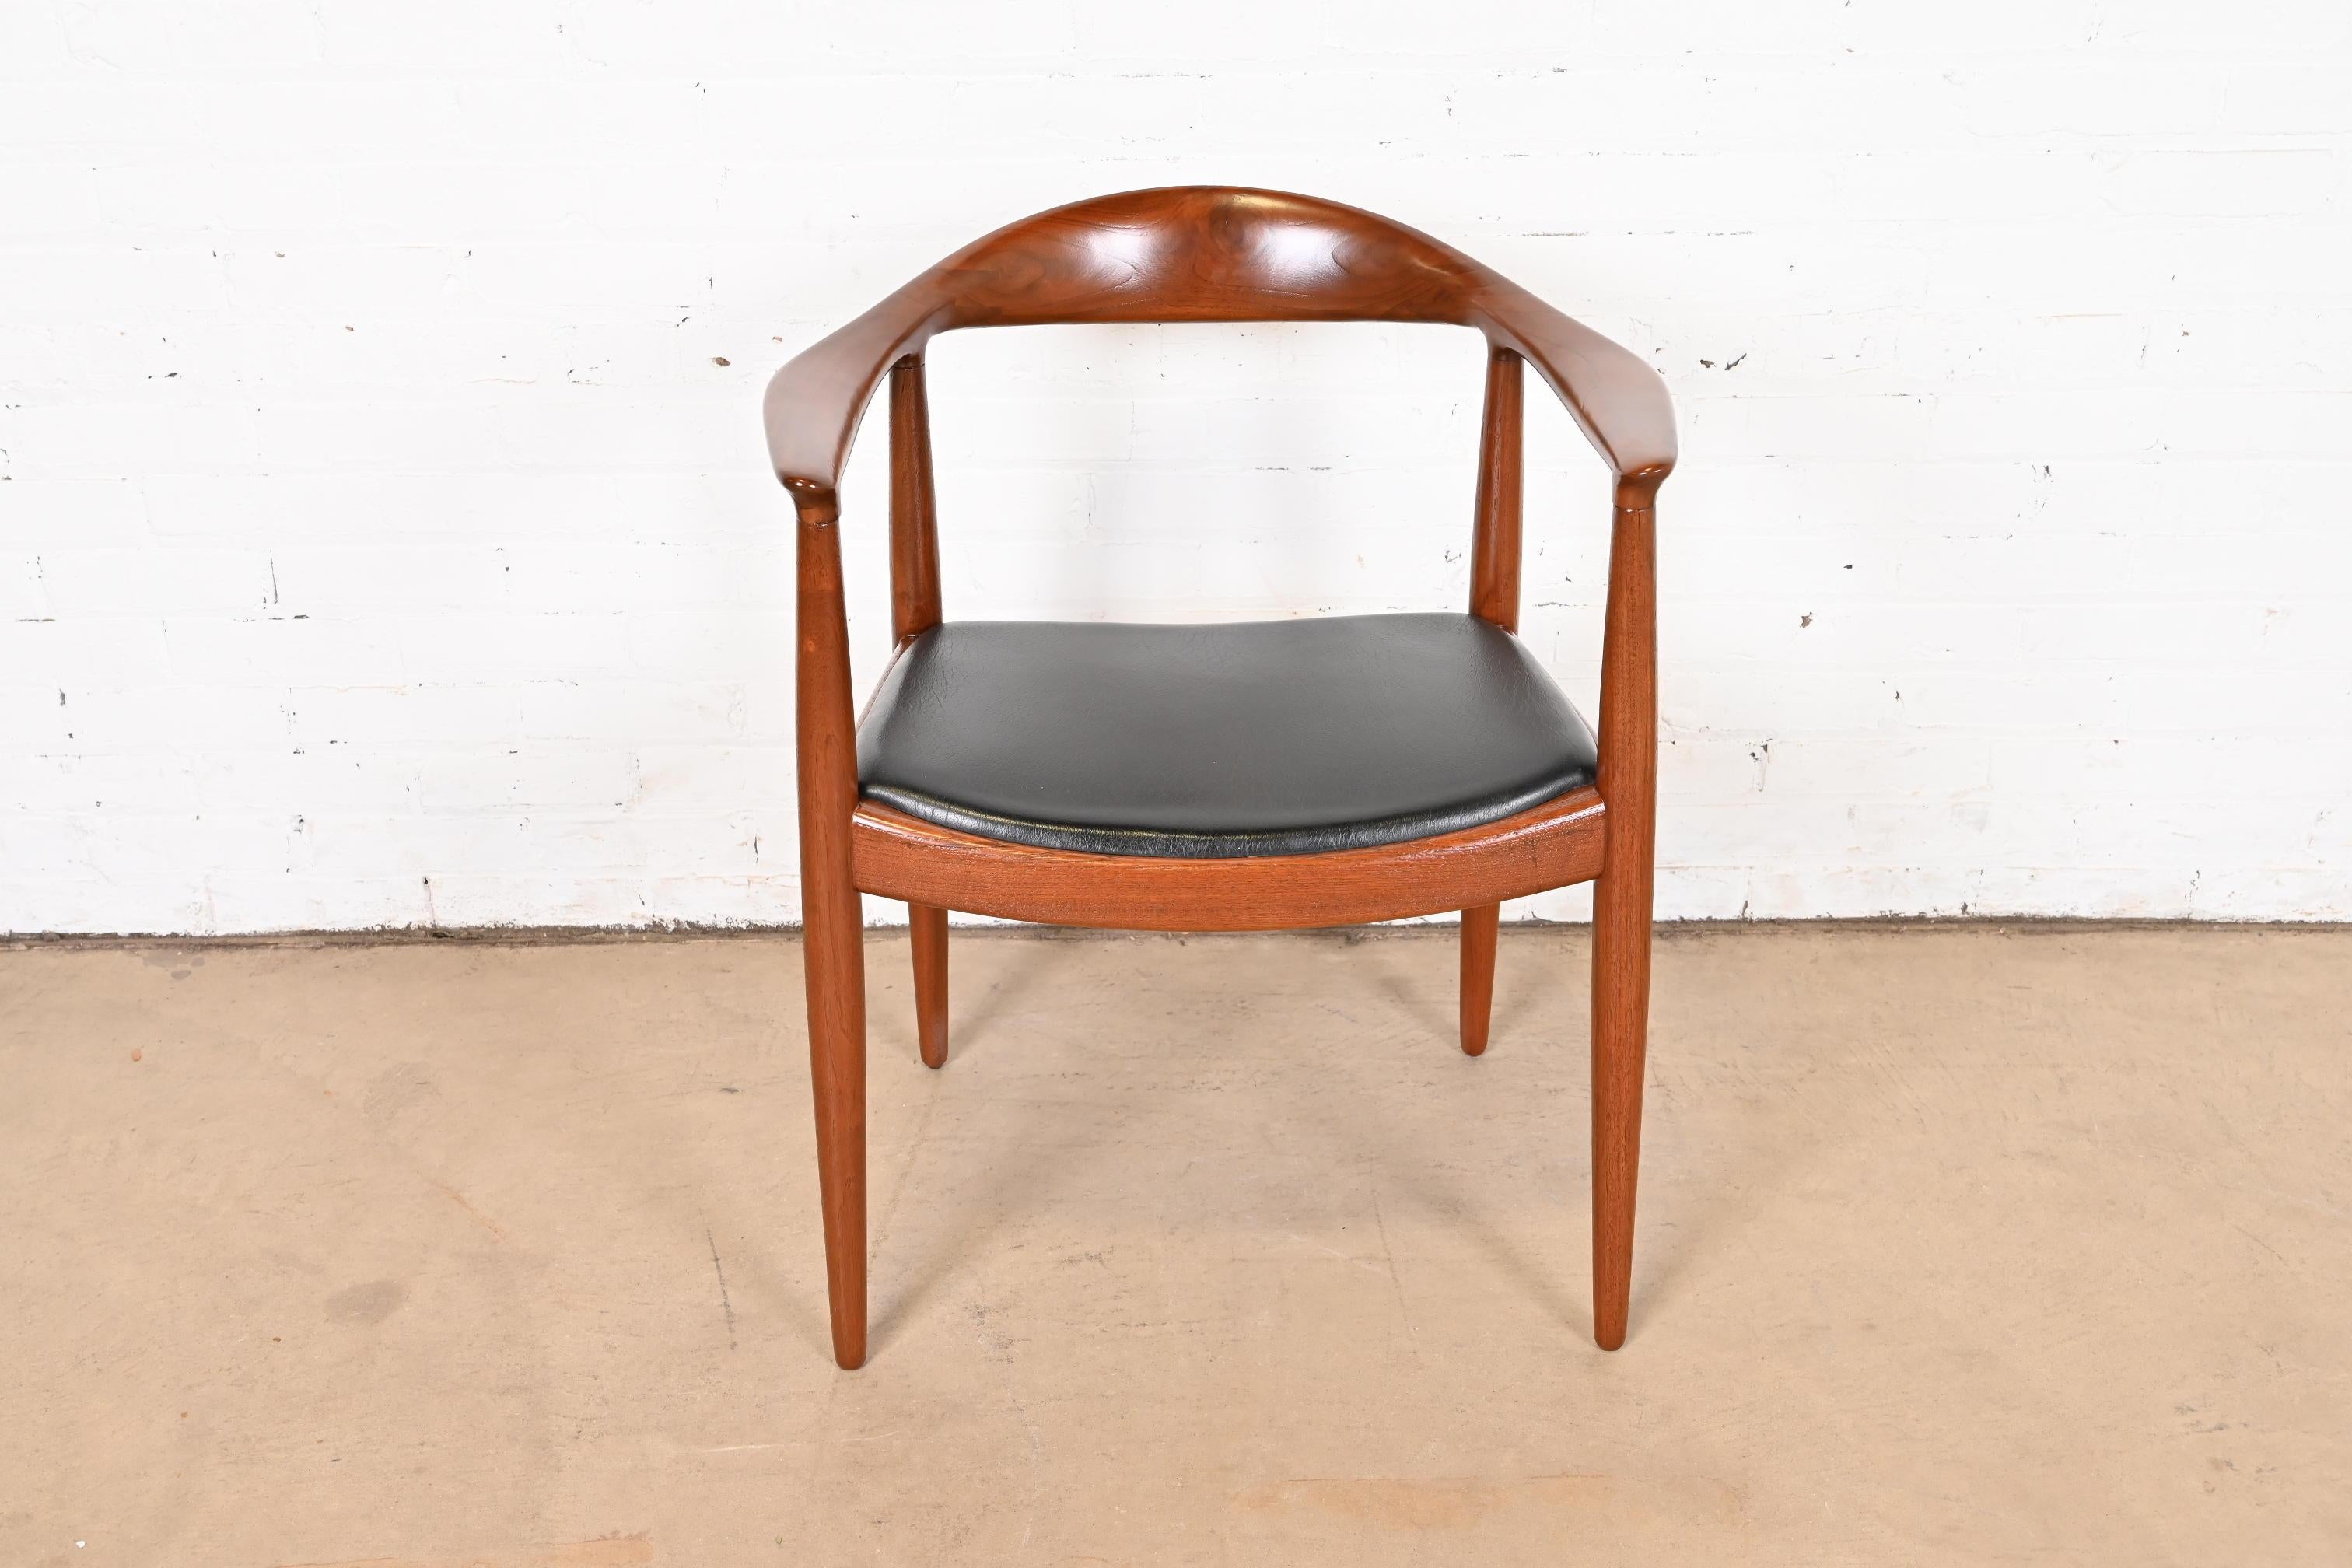 Wir bieten einen seltenen und außergewöhnlichen JH 501 Sessel an. Dieser meist als 